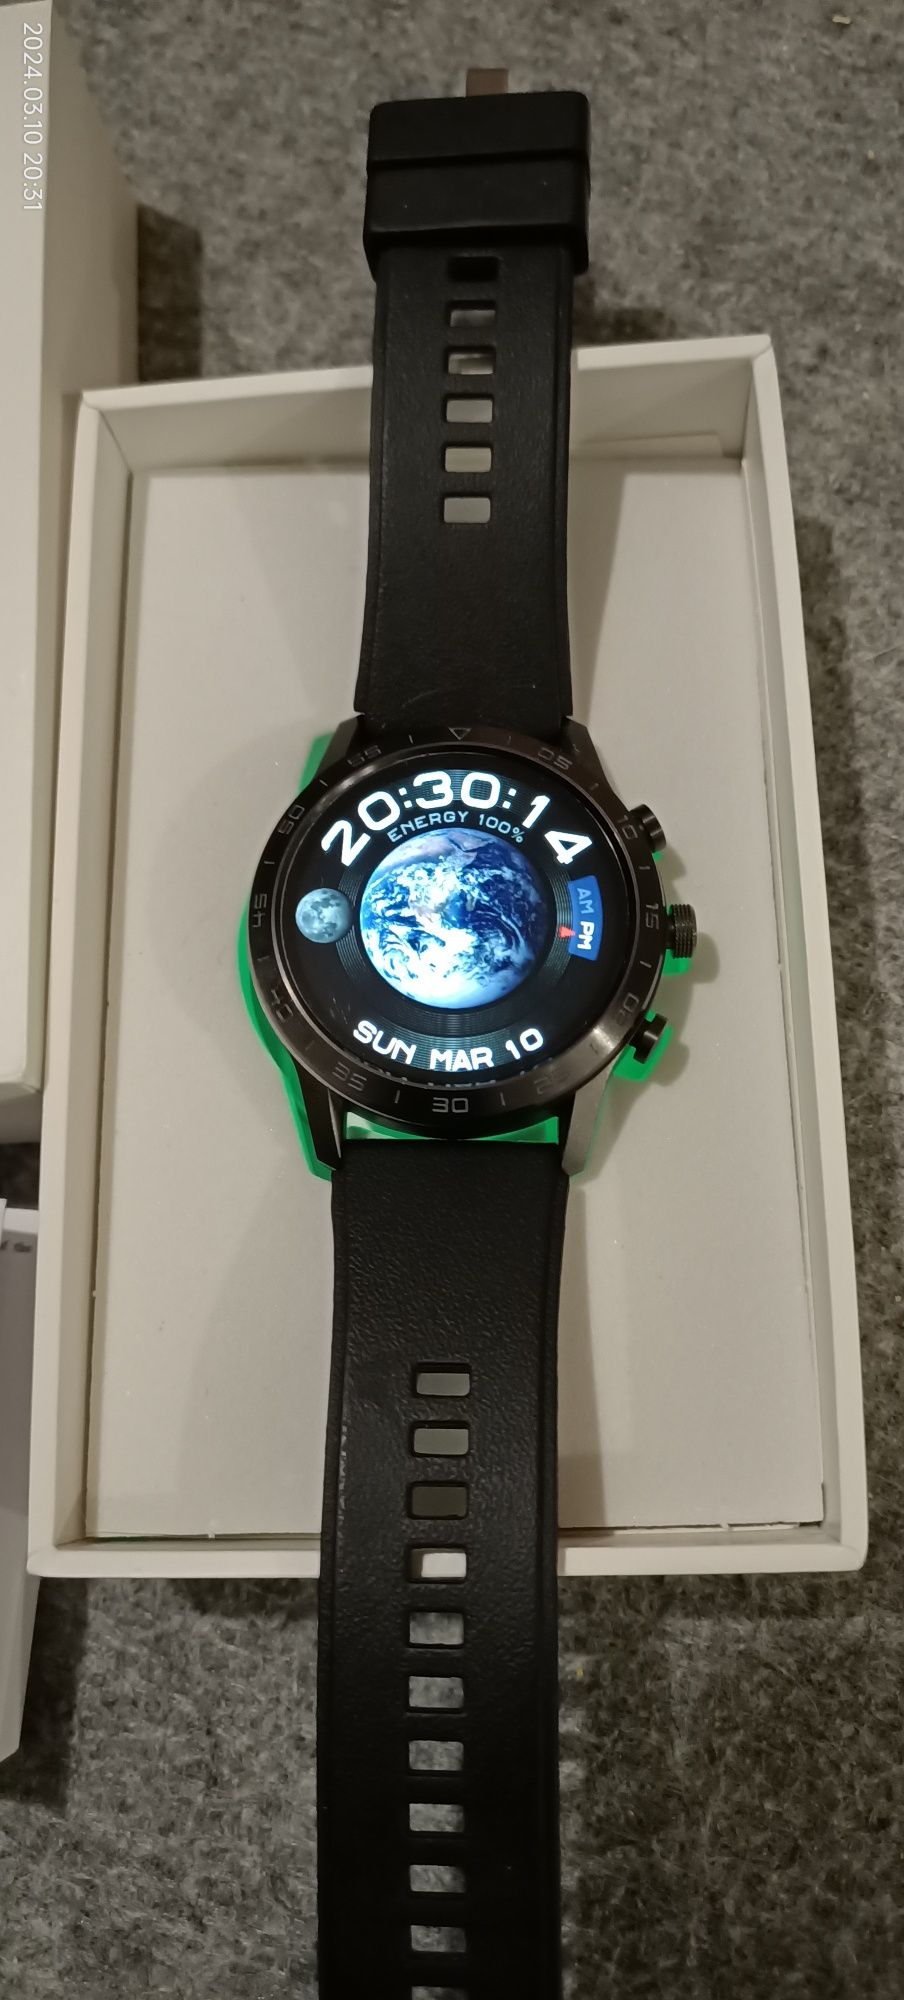 Smartwatch DT 70 idealny na prezent